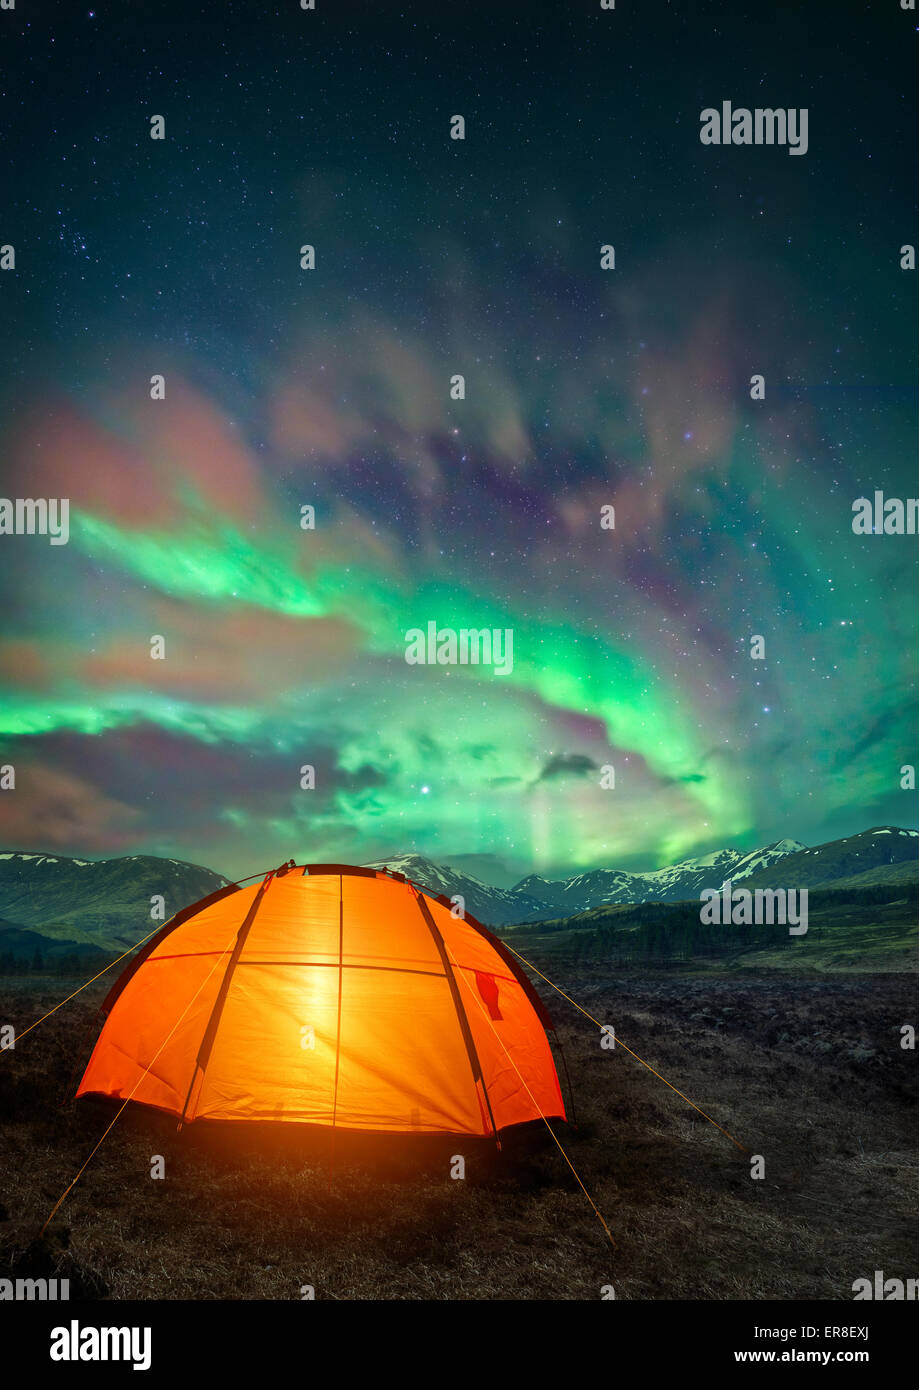 Une tente de camping glowing sous les aurores boréales. Camping de nuit scène. Banque D'Images